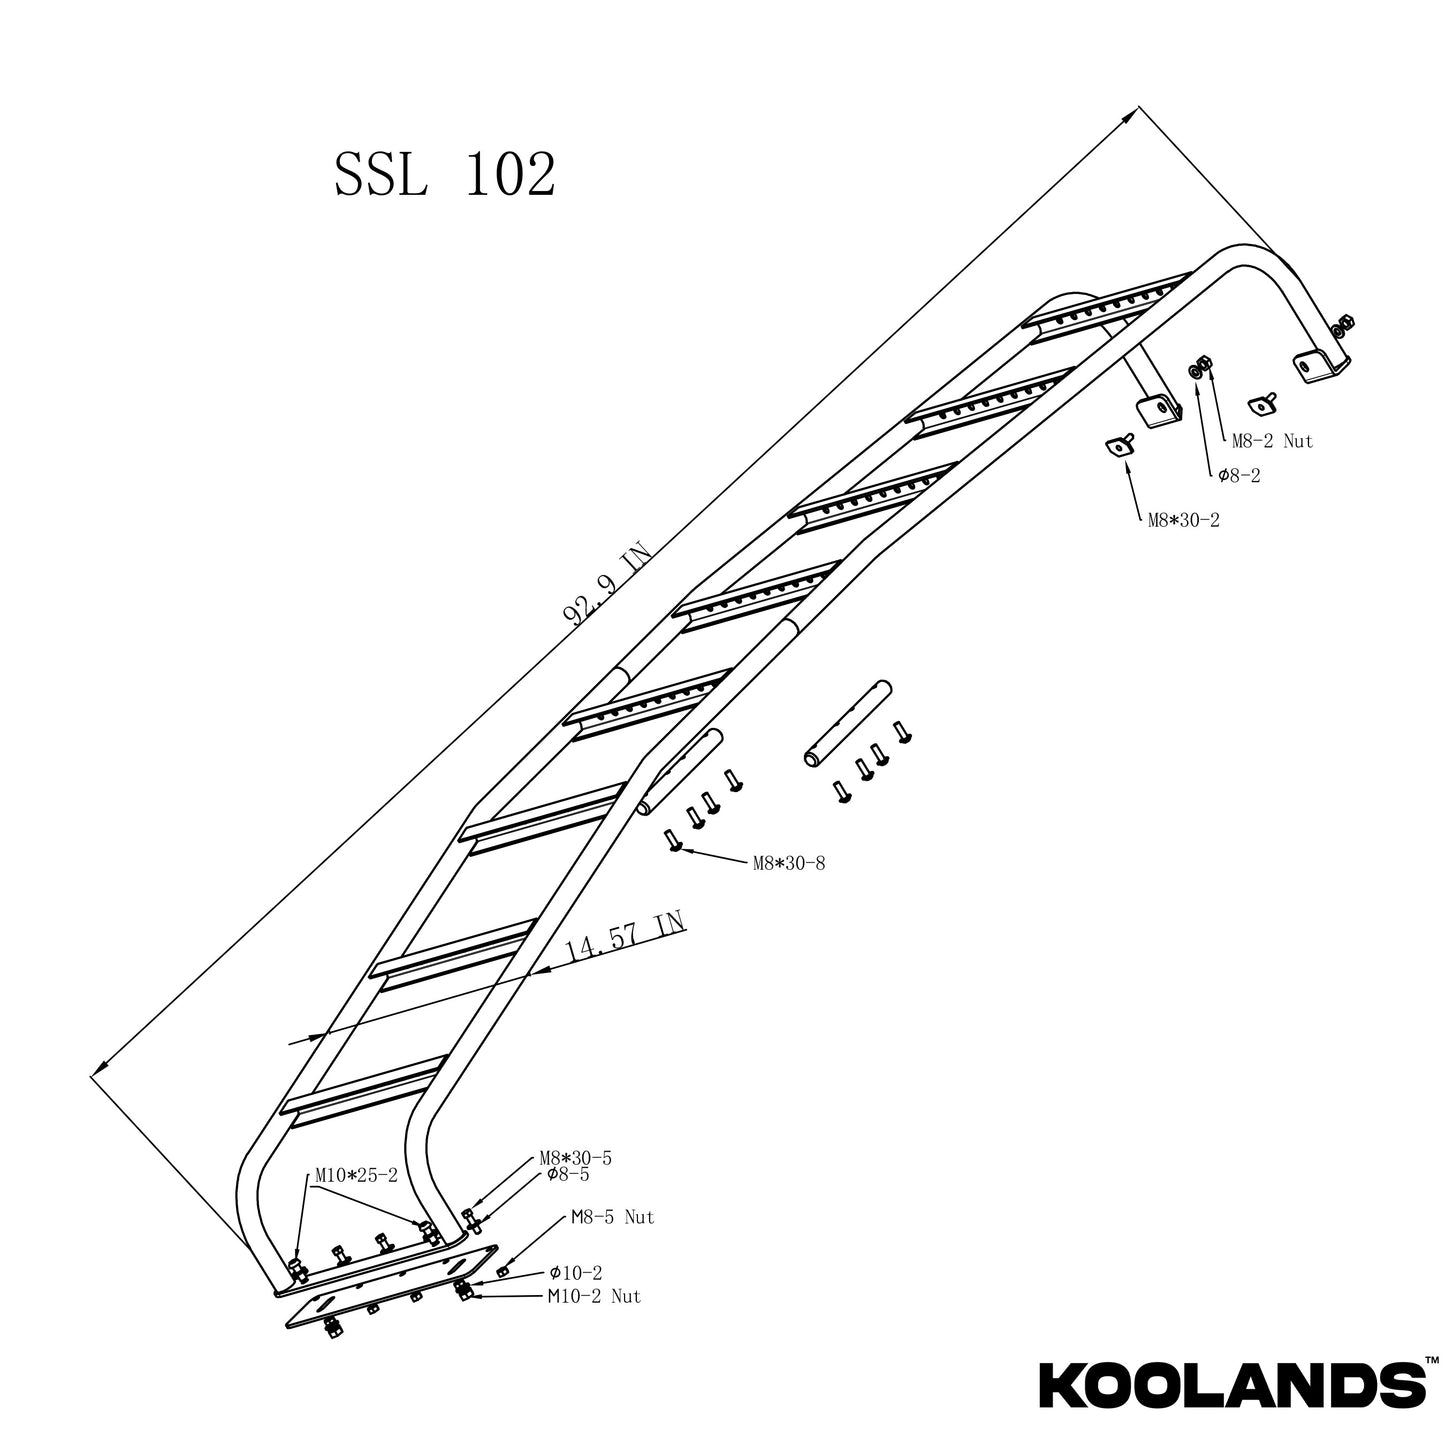 Koolands Sprinter Side Ladder